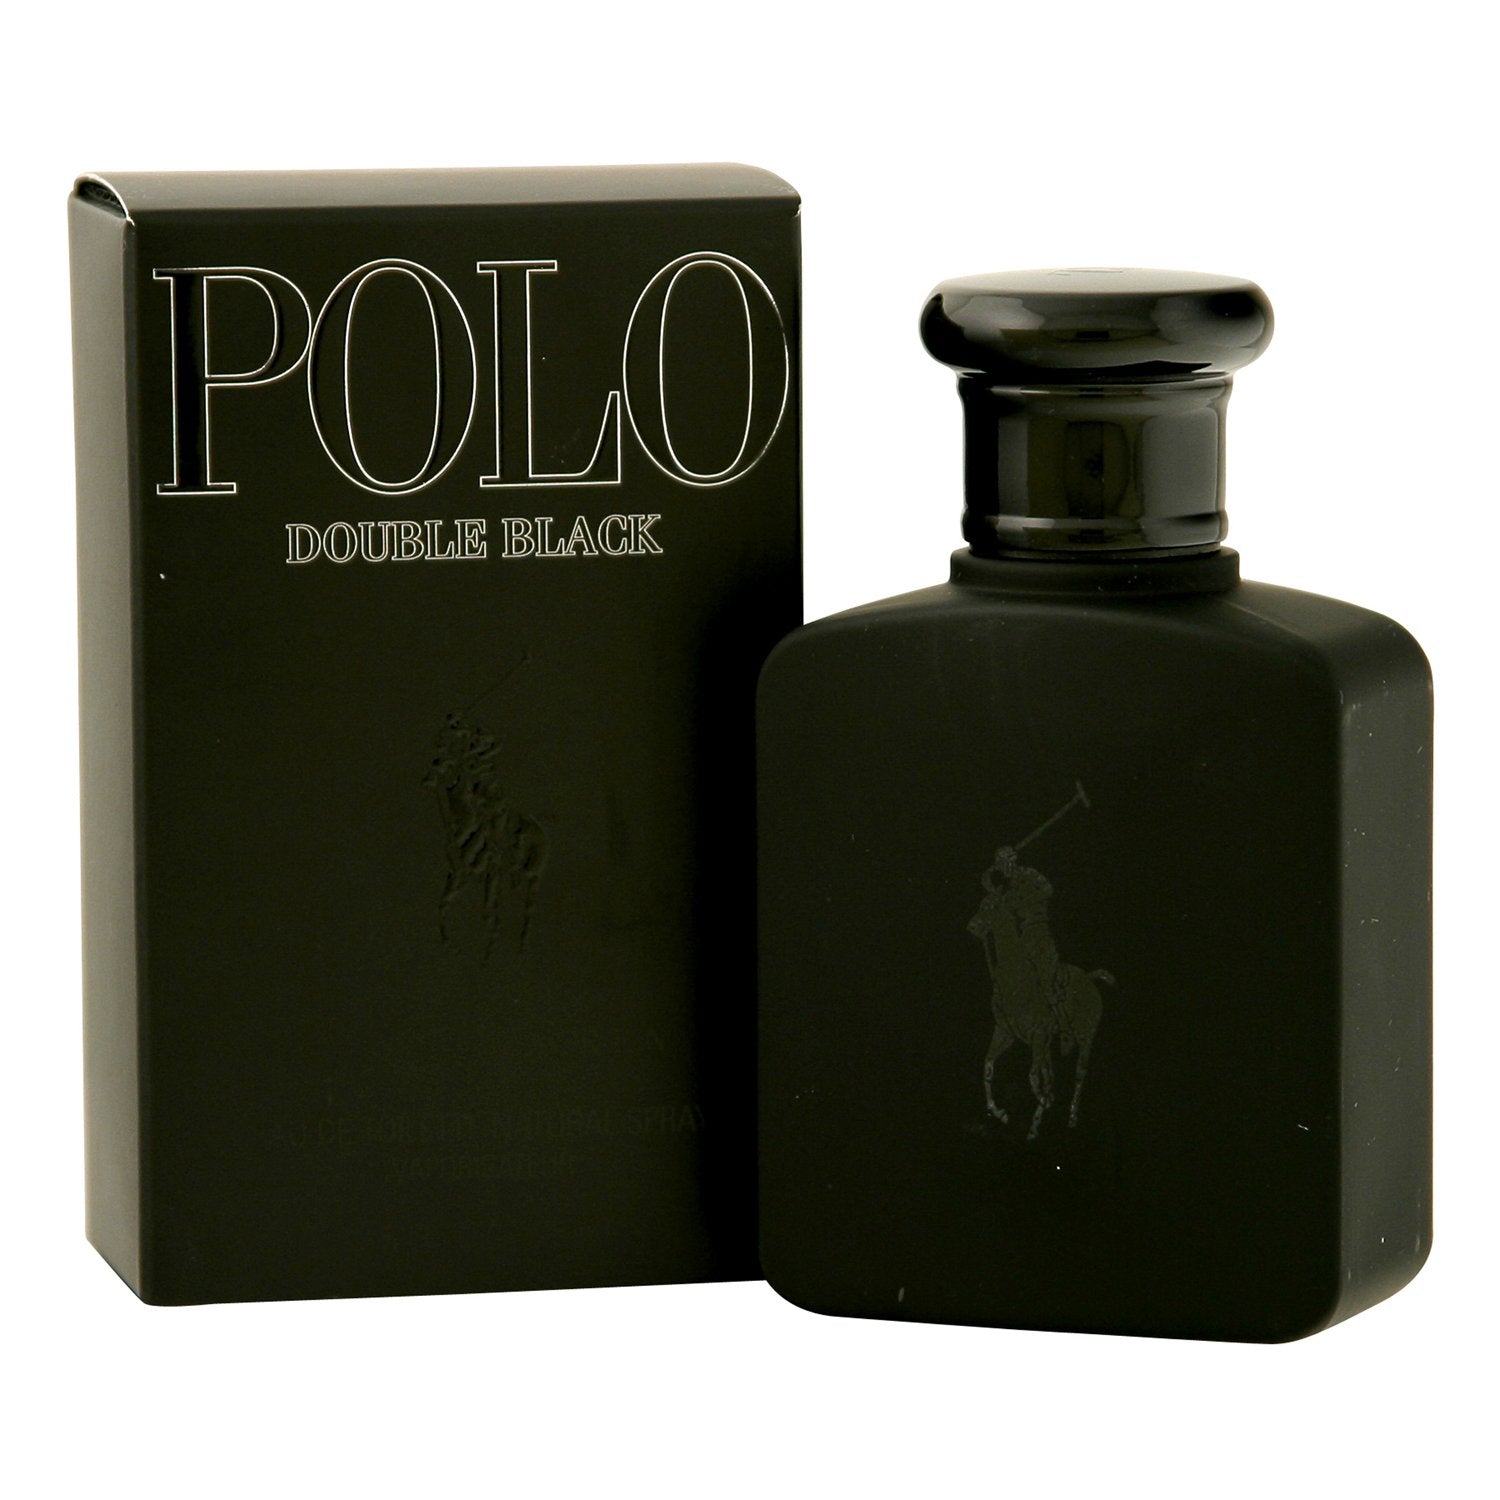 POLO DOUBLE BLACK FOR MEN BY RALPH LAUREN - EAU DE TOILETTE SPRAY